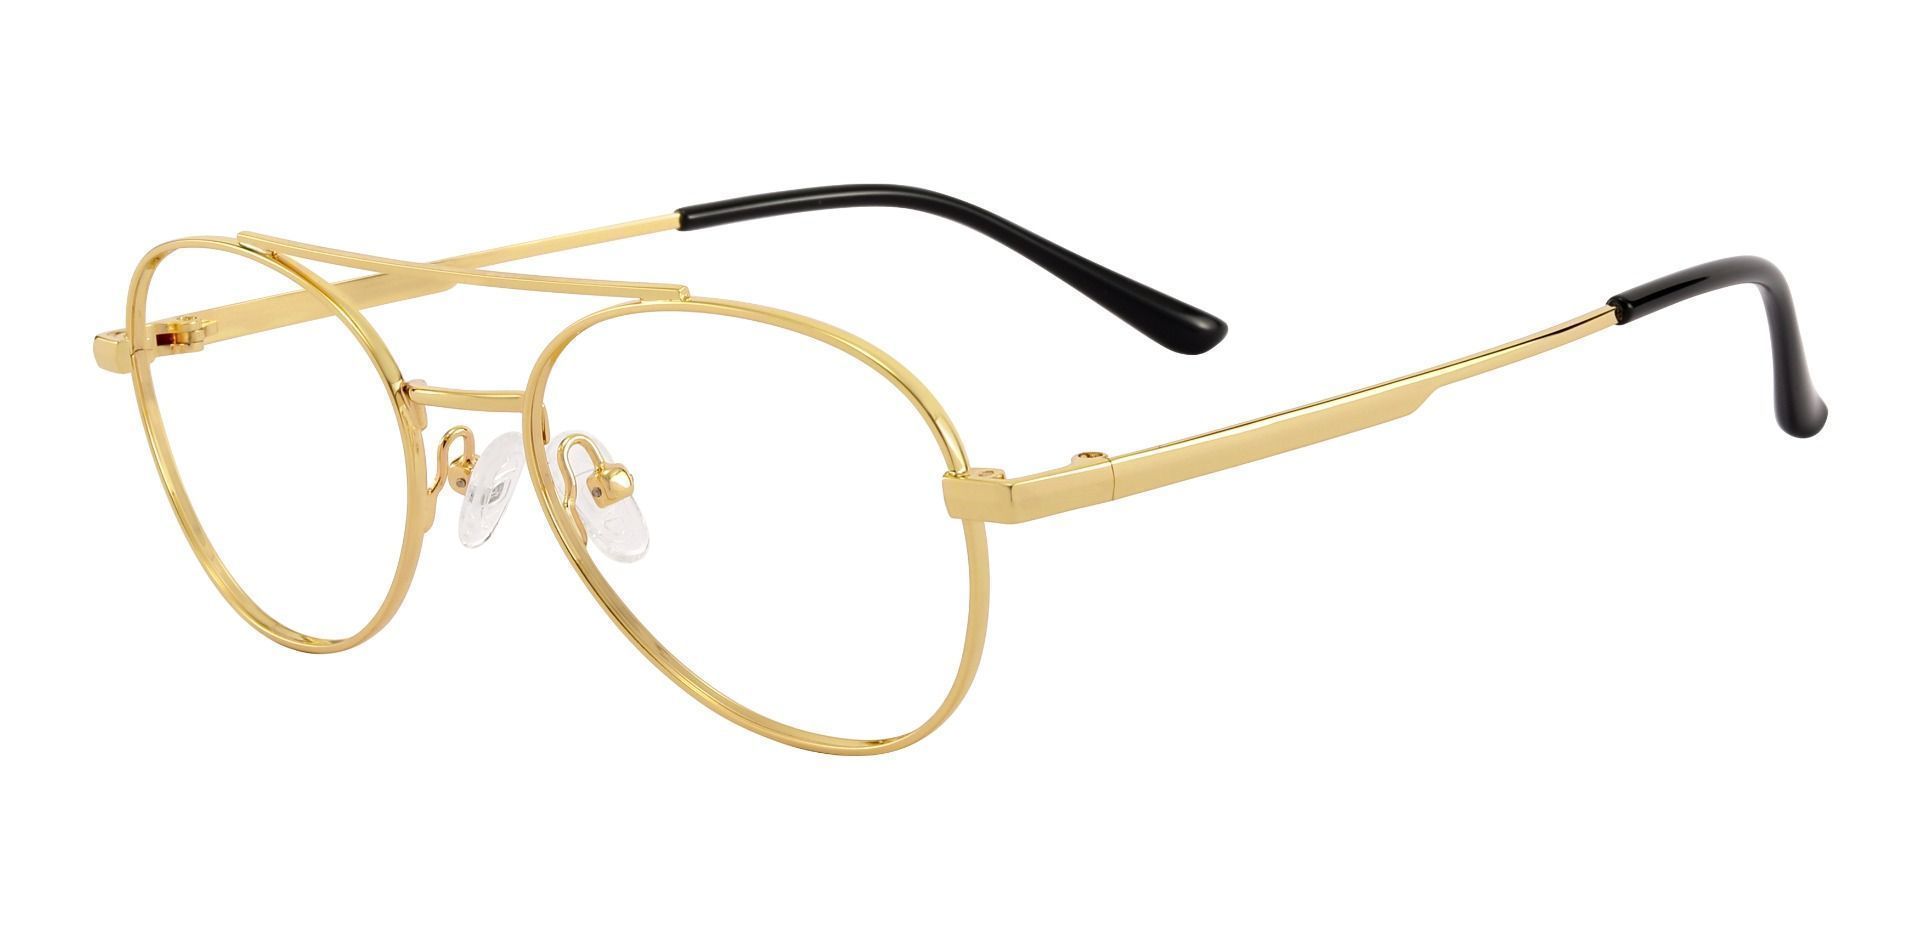 Hinton Aviator Prescription Glasses - Gold